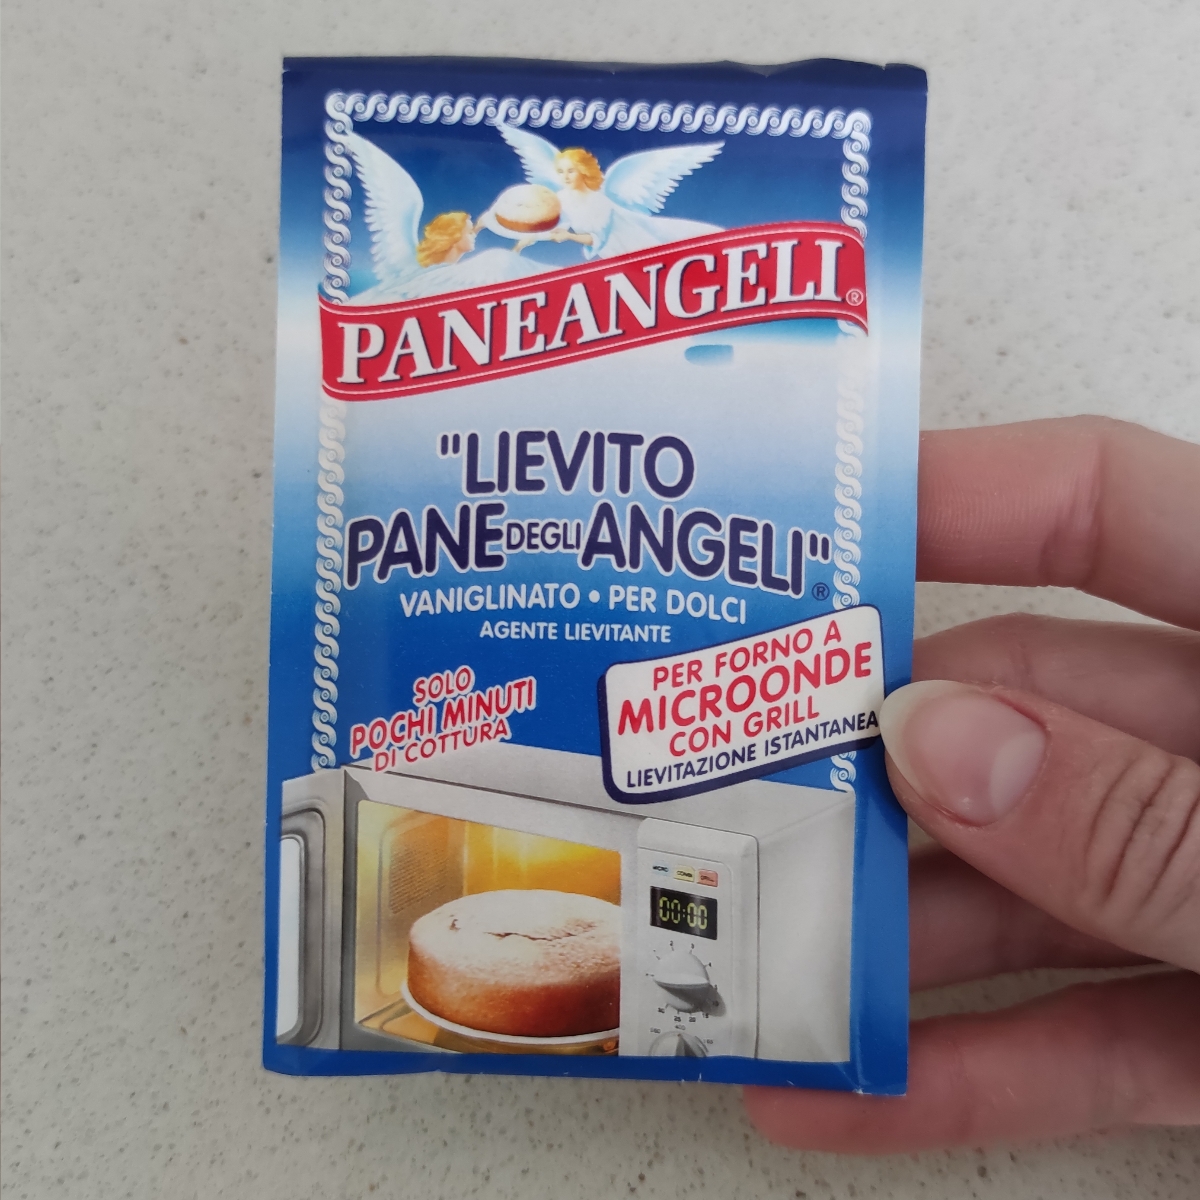 Paneangeli Lievito Vanigliato Per Dolci Per Forno A Microonde Reviews |  abillion